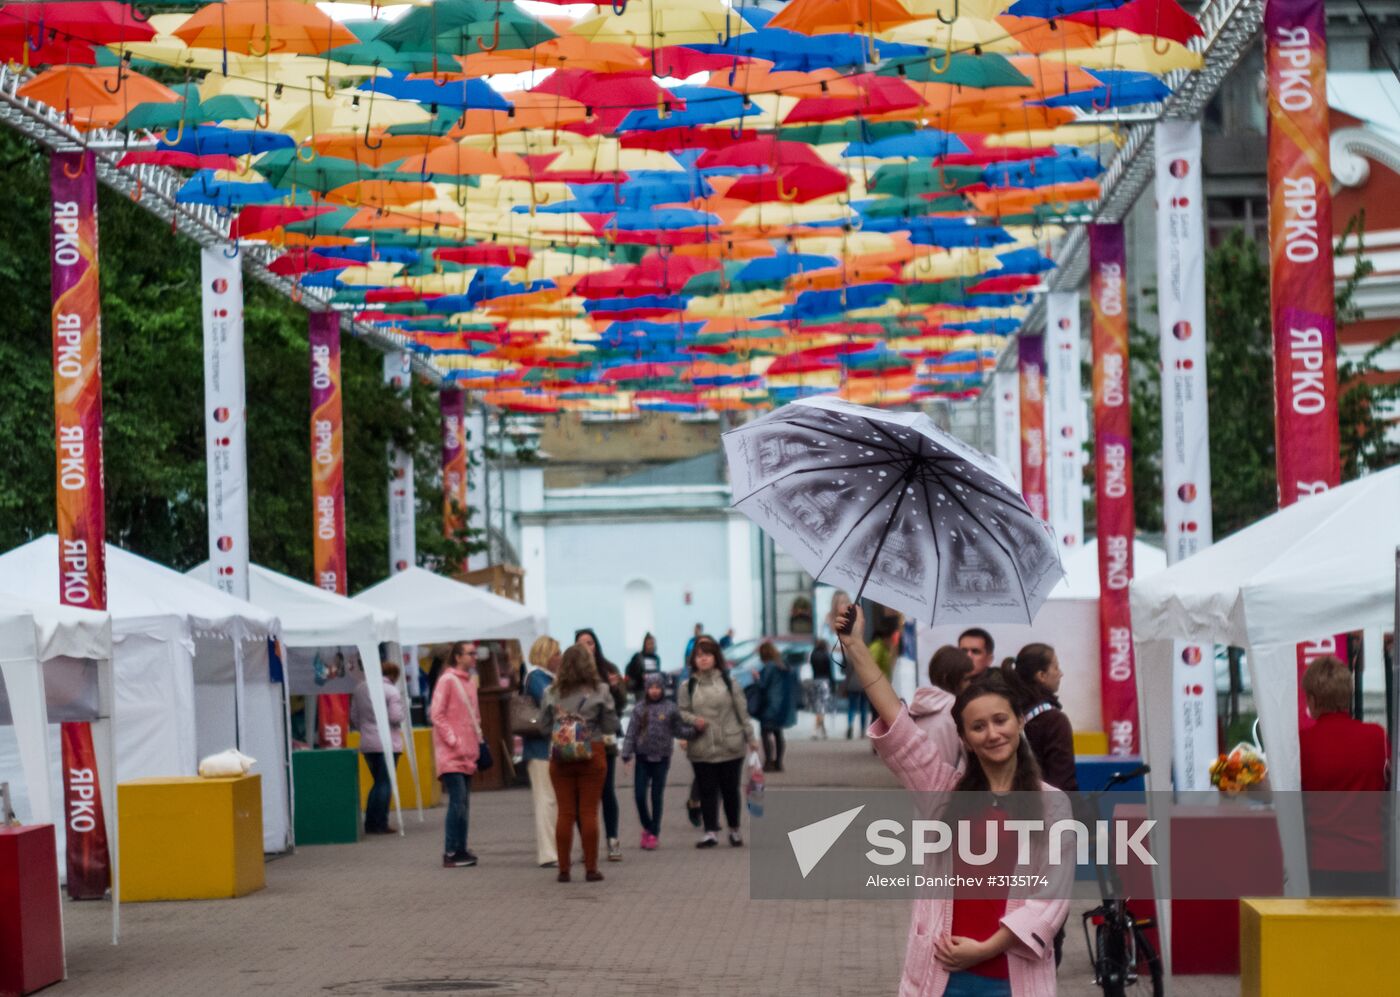 Floating Umbrellas alley in St. Petersburg